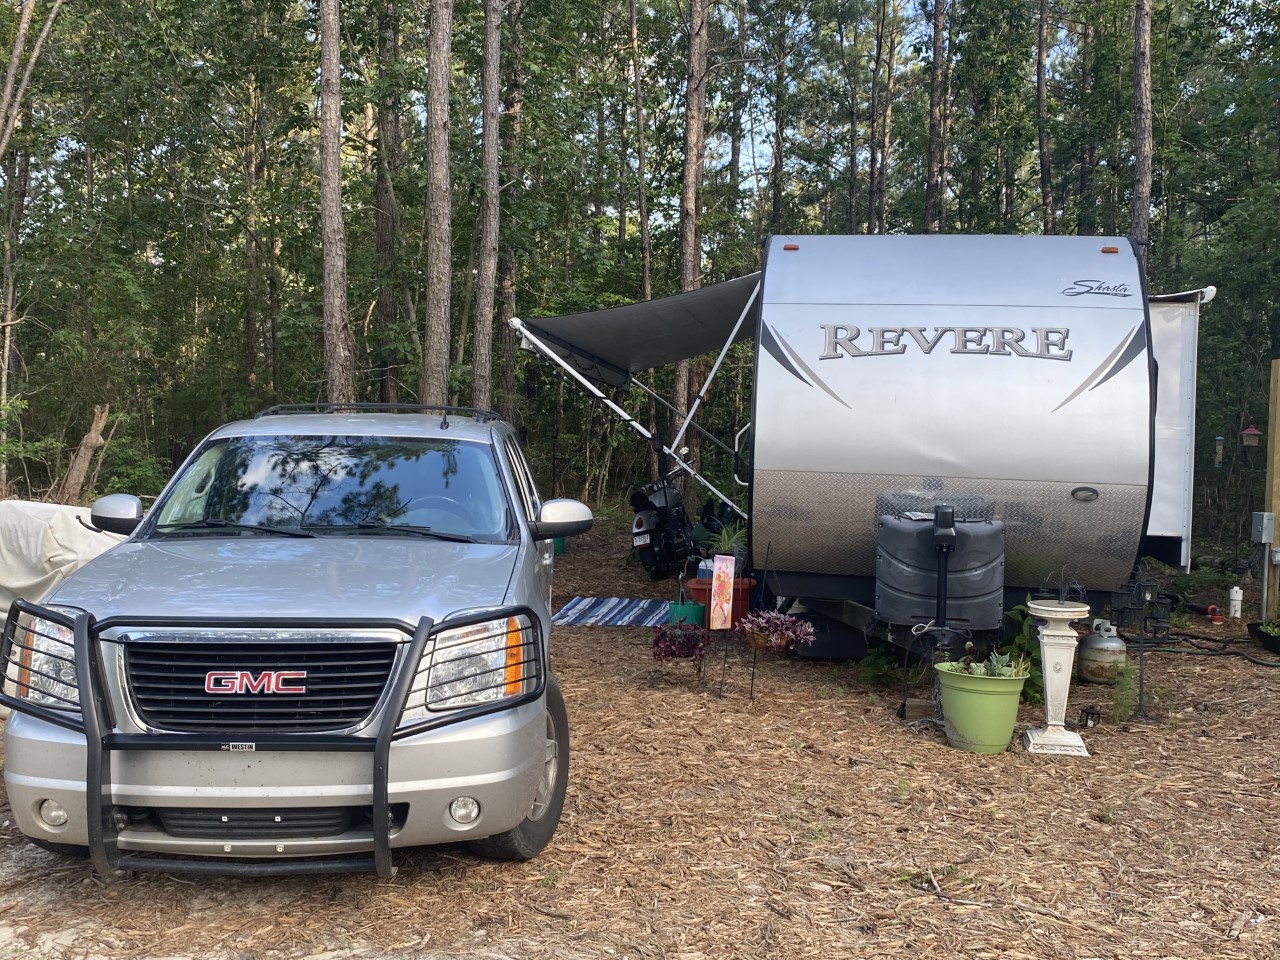 Camper spot with parked camper